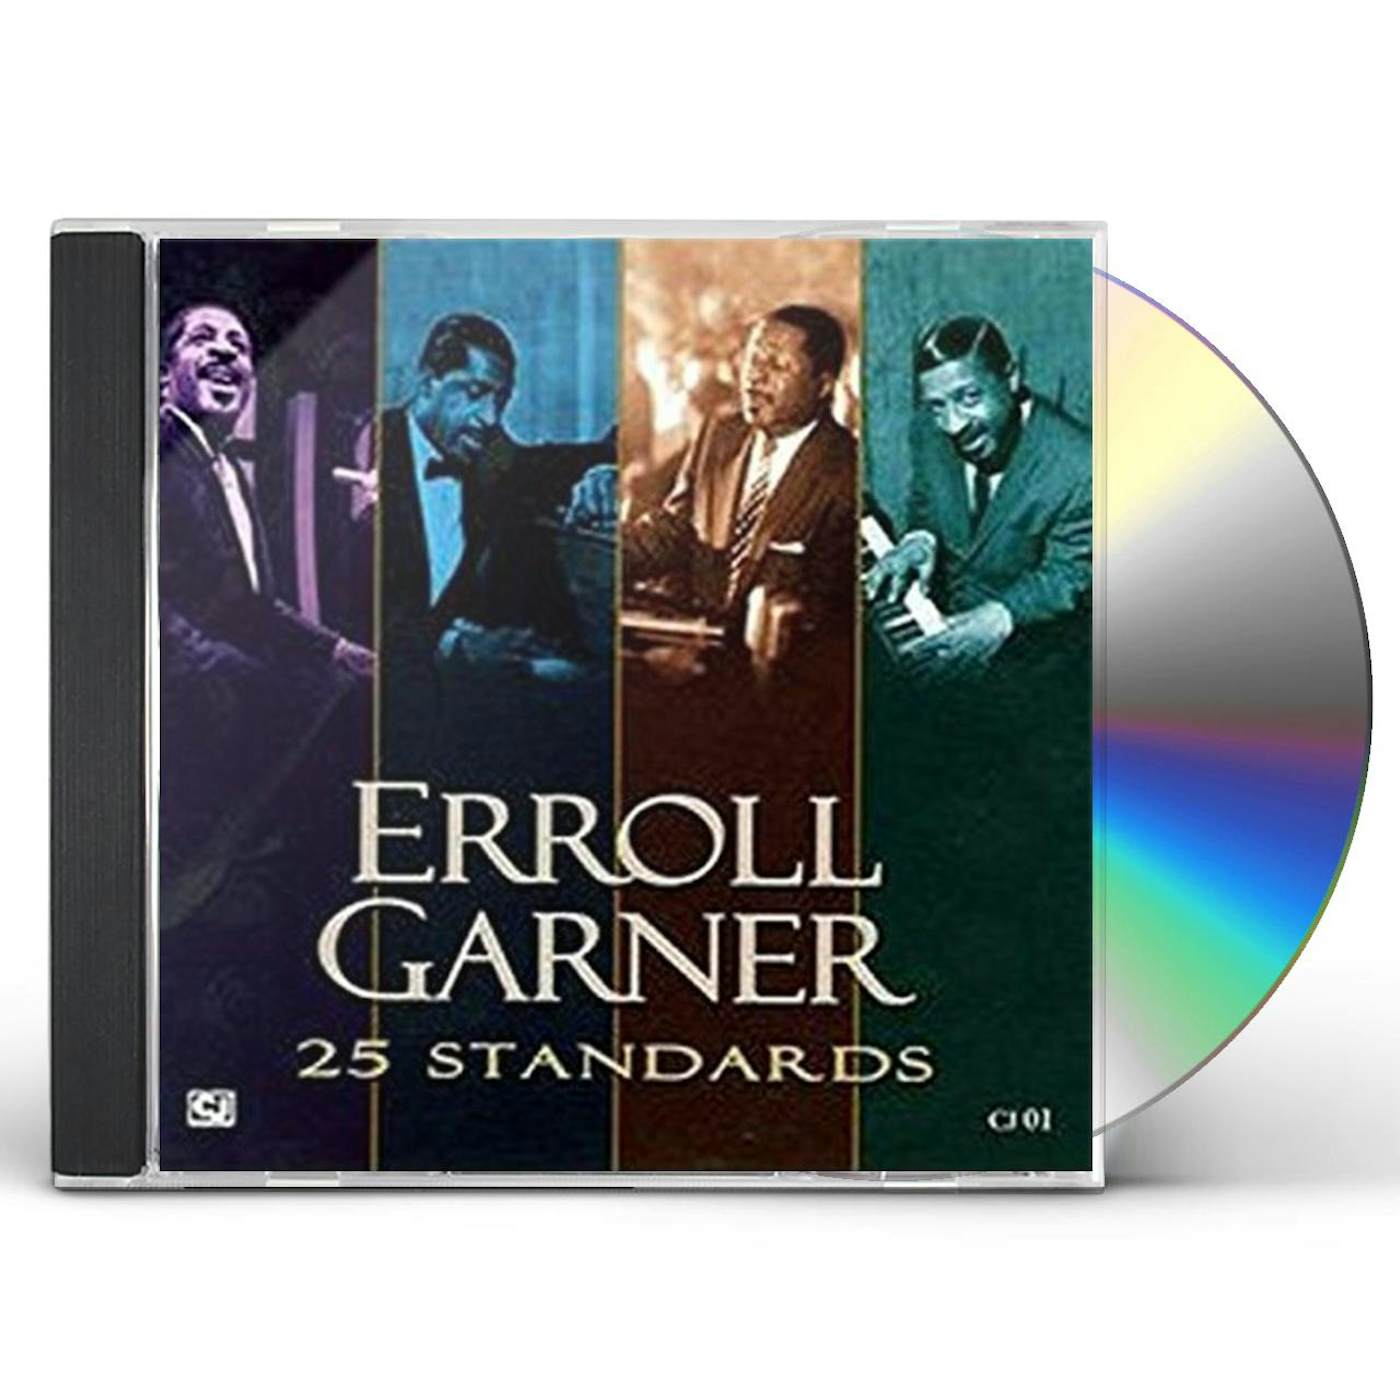 Erroll Garner 25 STANDARDS CD